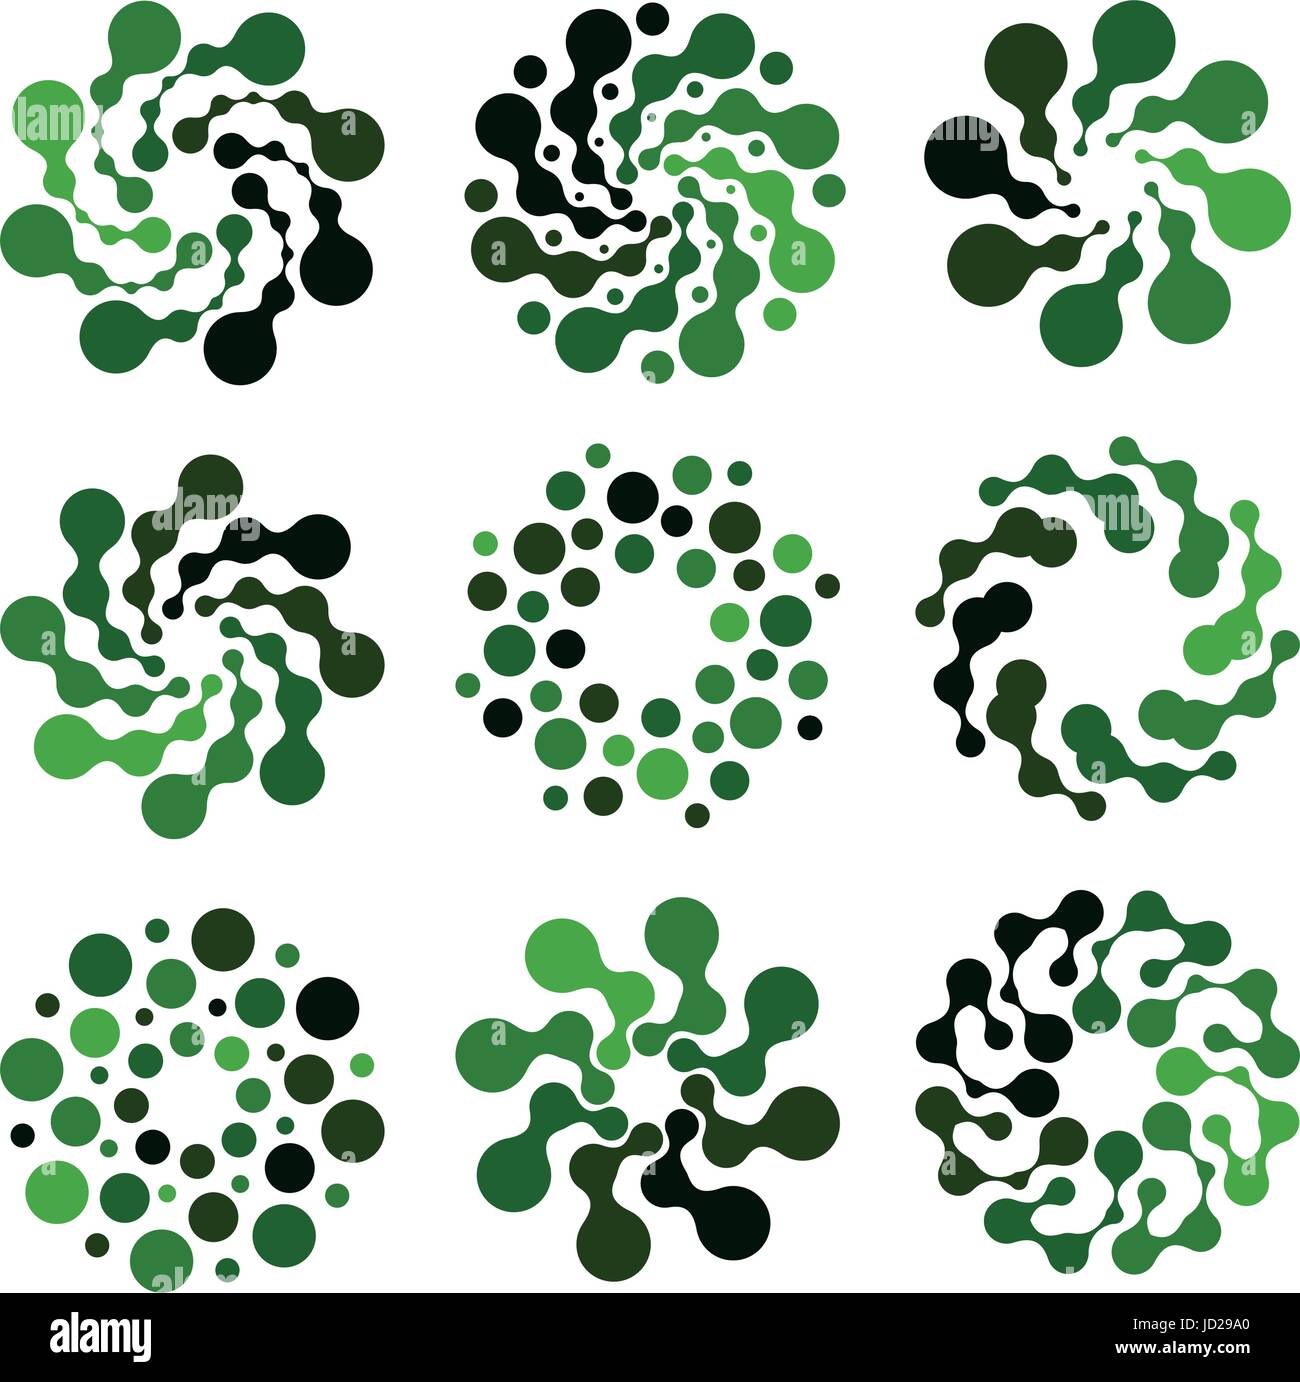 Abstract isolato di colore verde a forma rotonda set del logo su sfondo bianco, semplice piatto punteggiato logotipo swirl raccolta, flower illustrazione vettoriale. Illustrazione Vettoriale